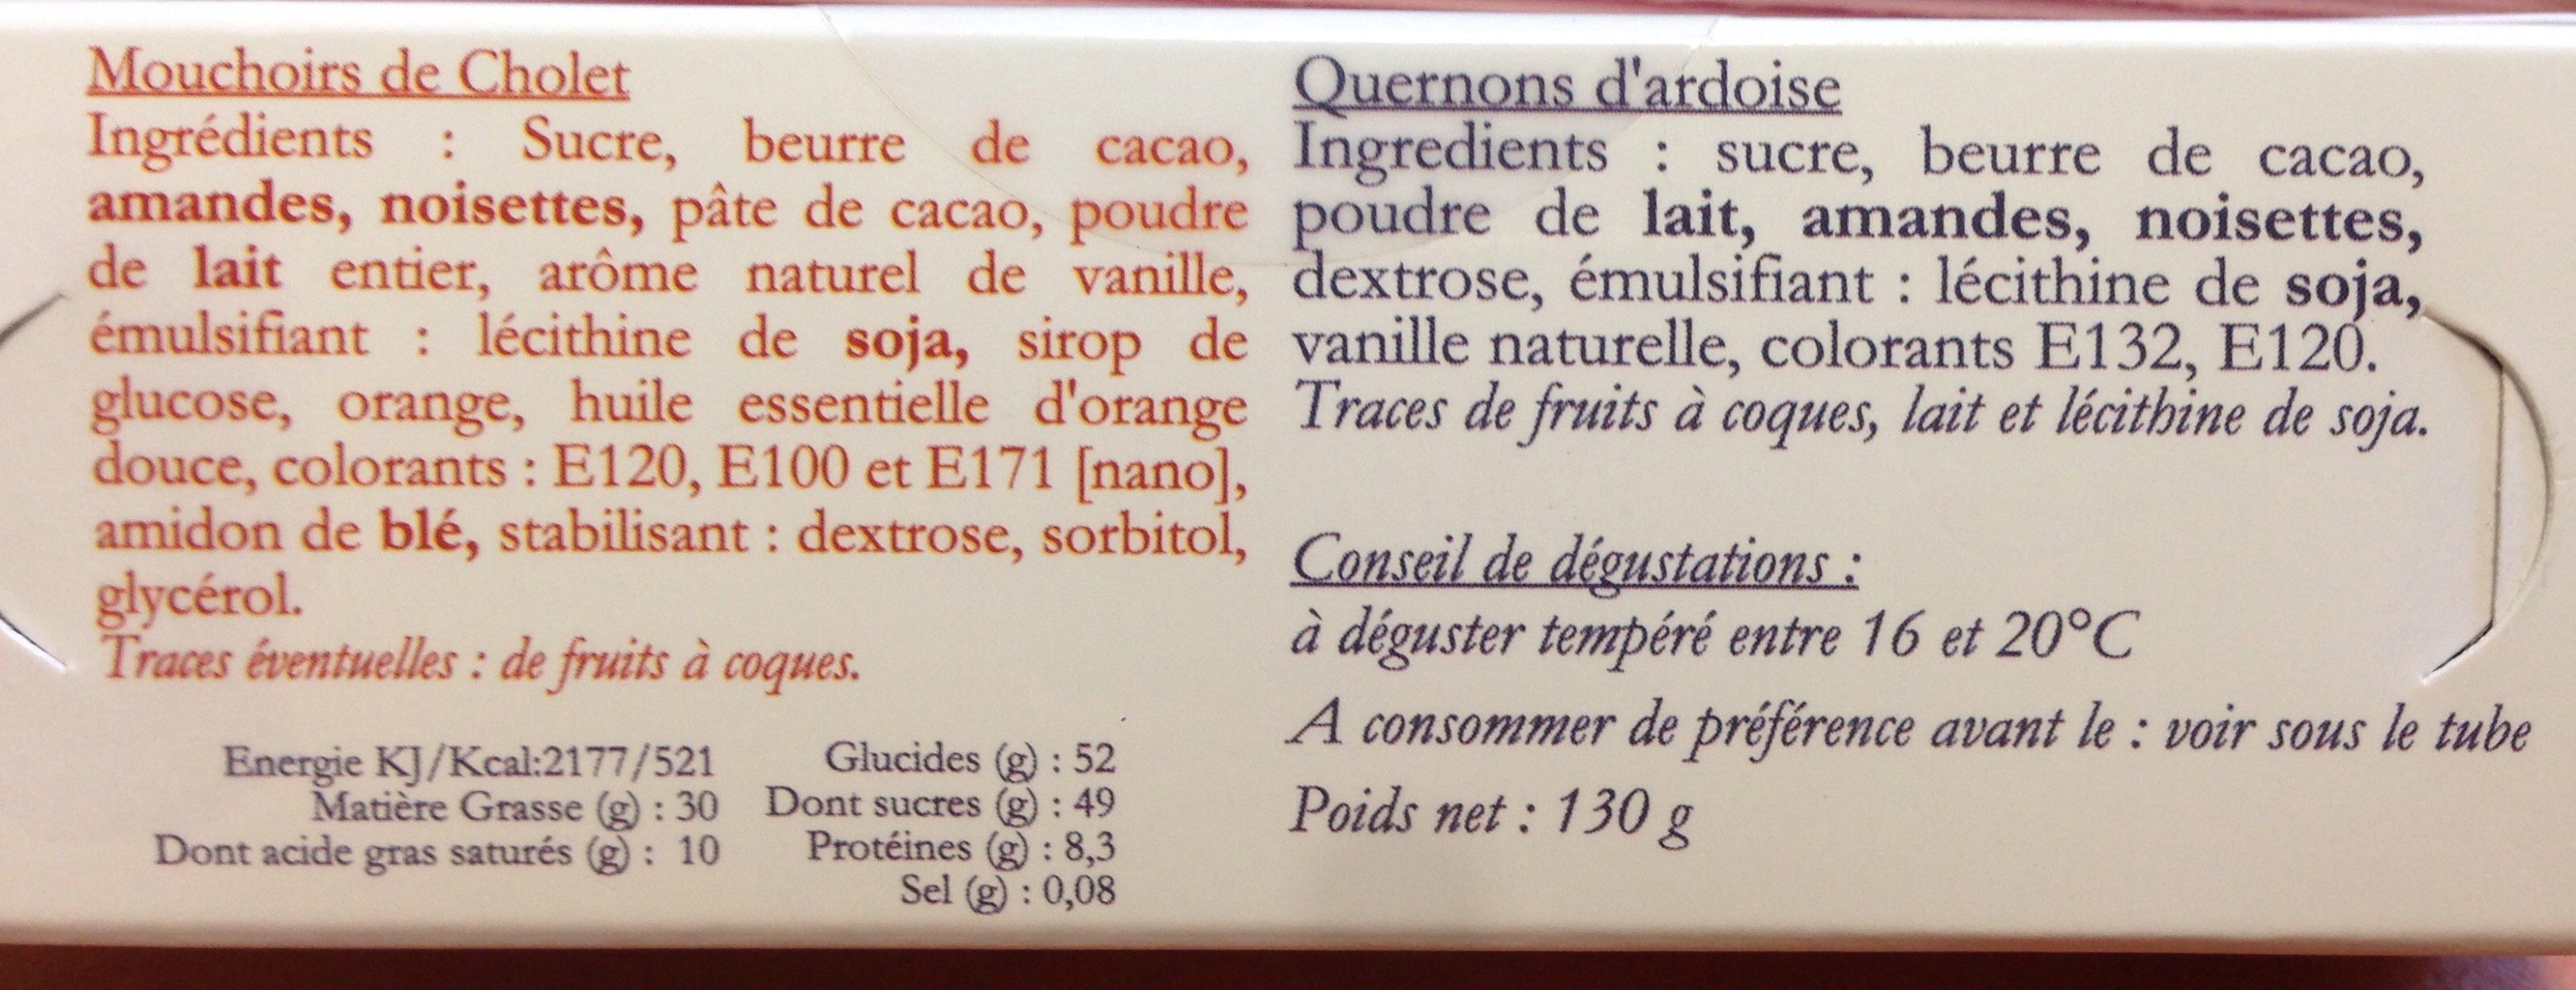 Mouchoir de cholet & quernons d'ardoise - Ingrédients - fr